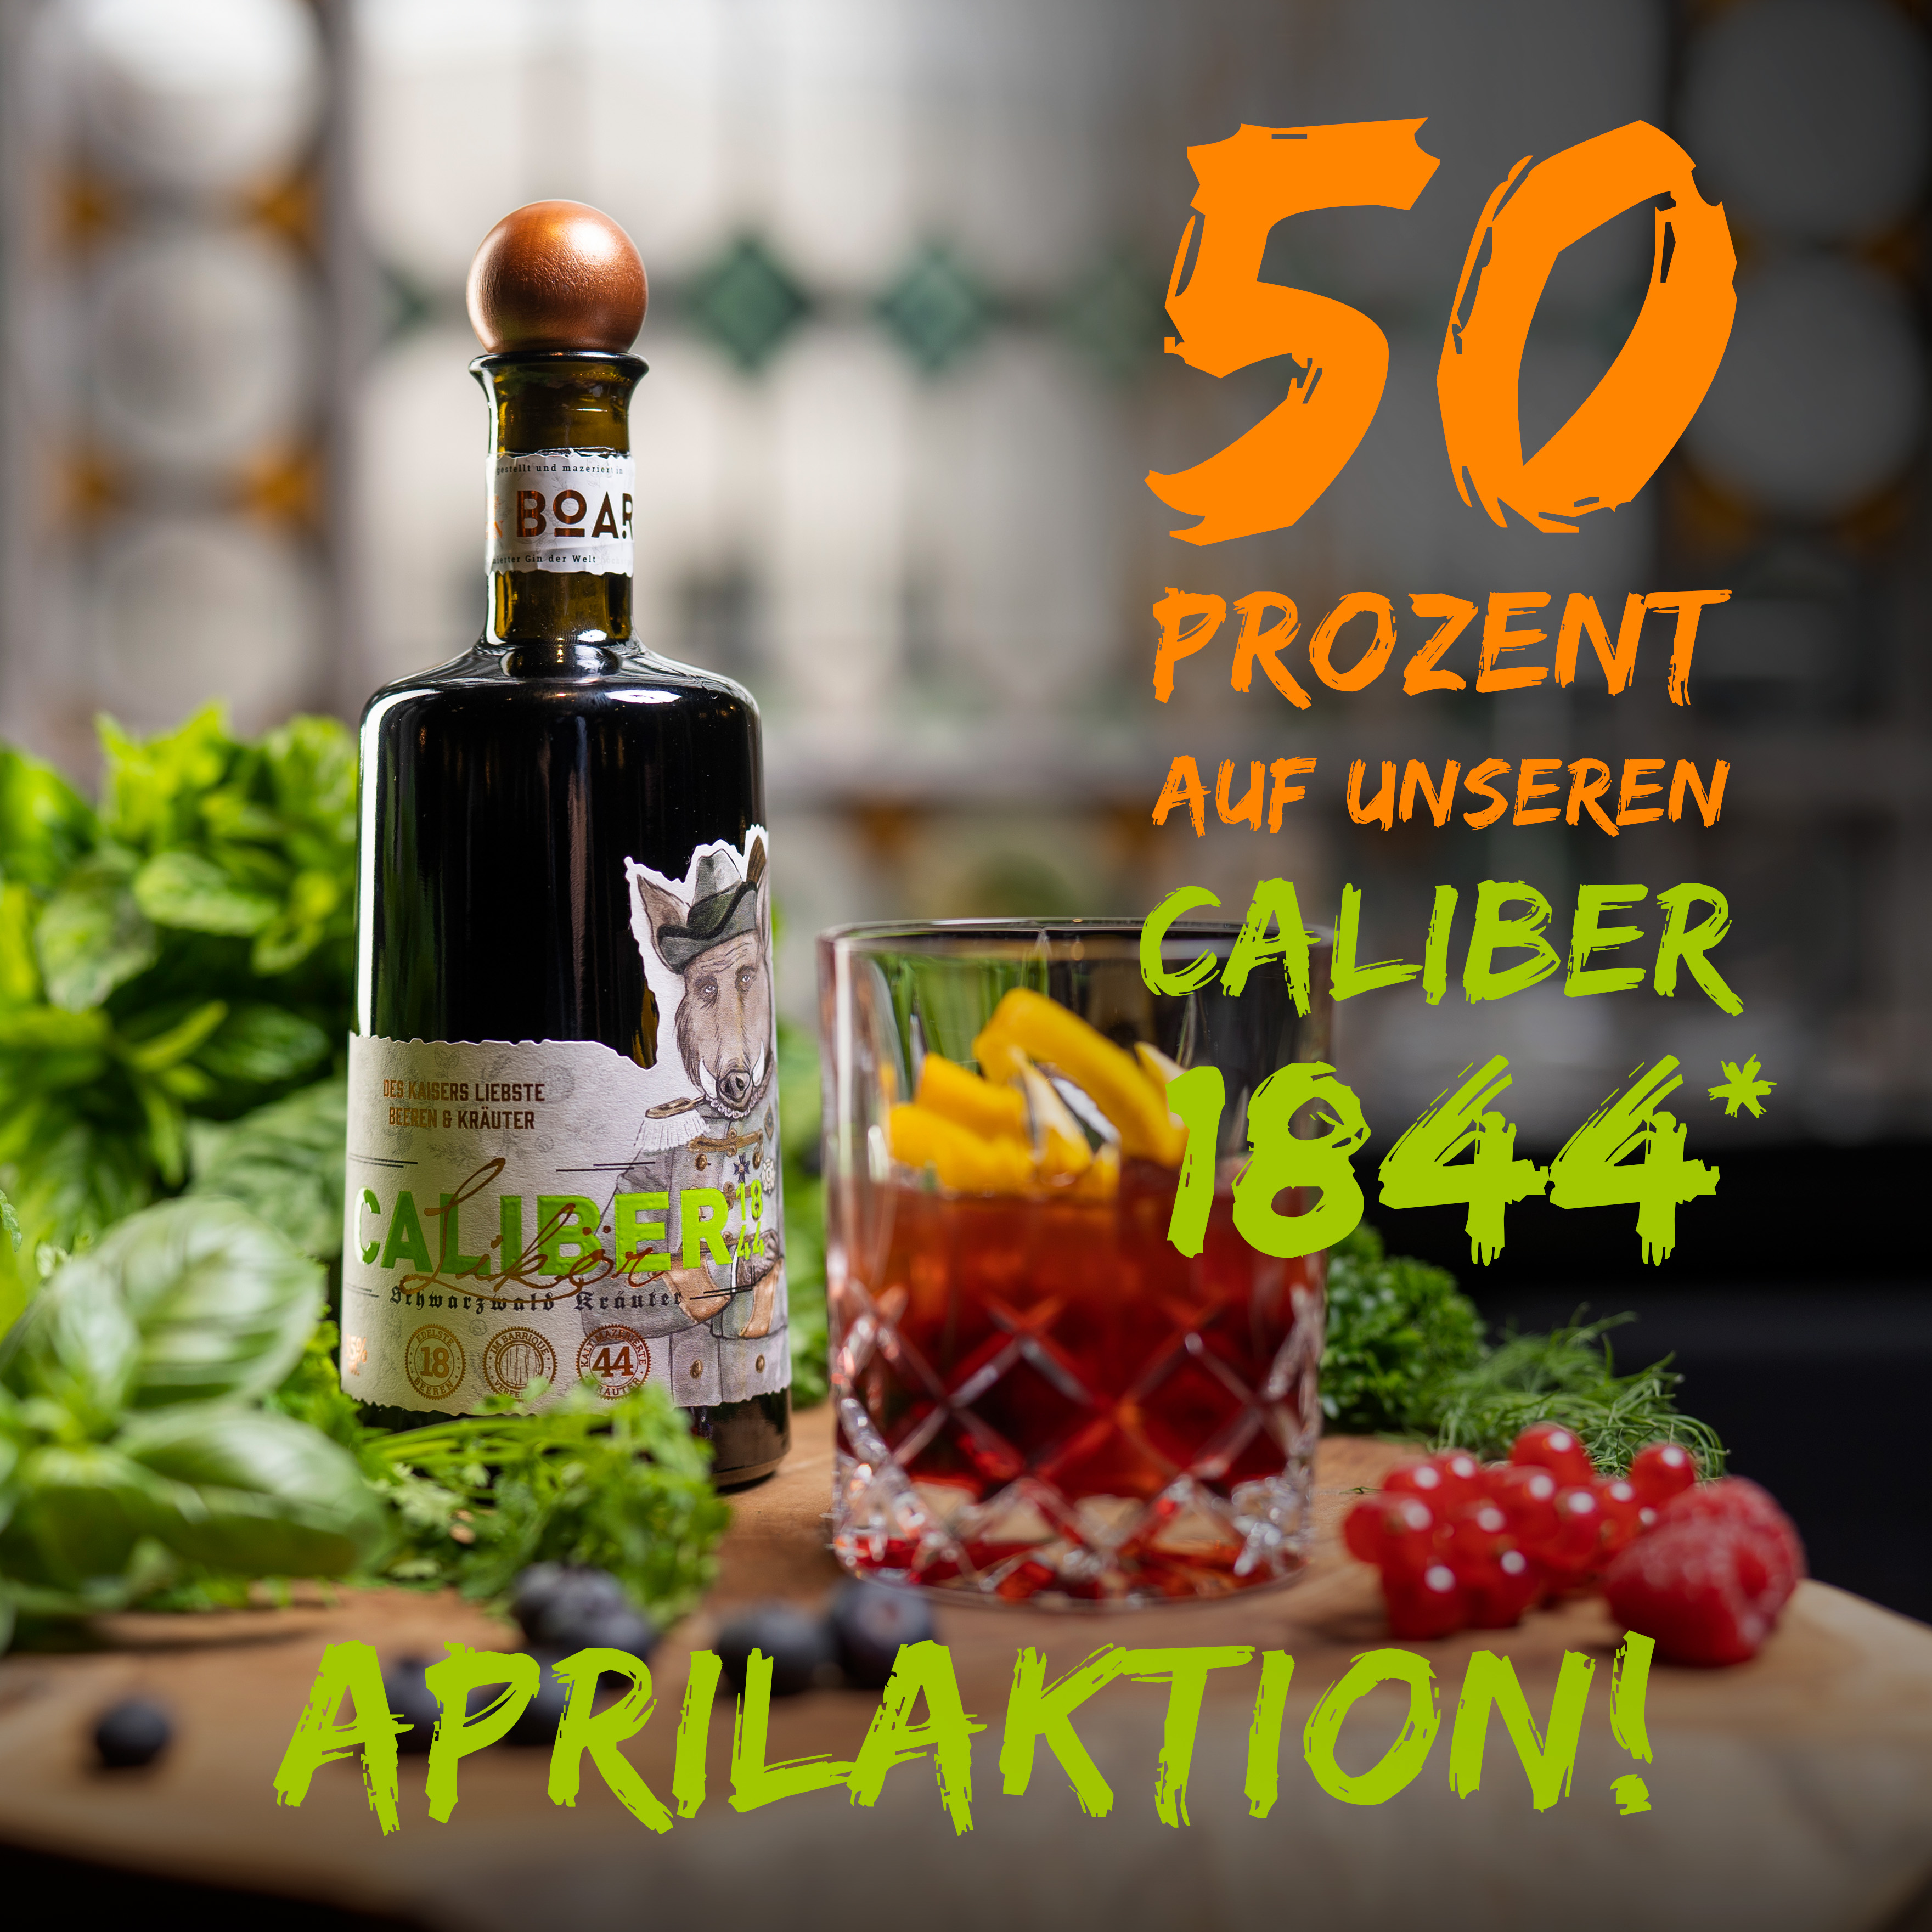 Aprilaktion: 50 % Ermäßigung auf Caliber 1844 beim Kauf von einer 0,5L-Gin-Flasche!